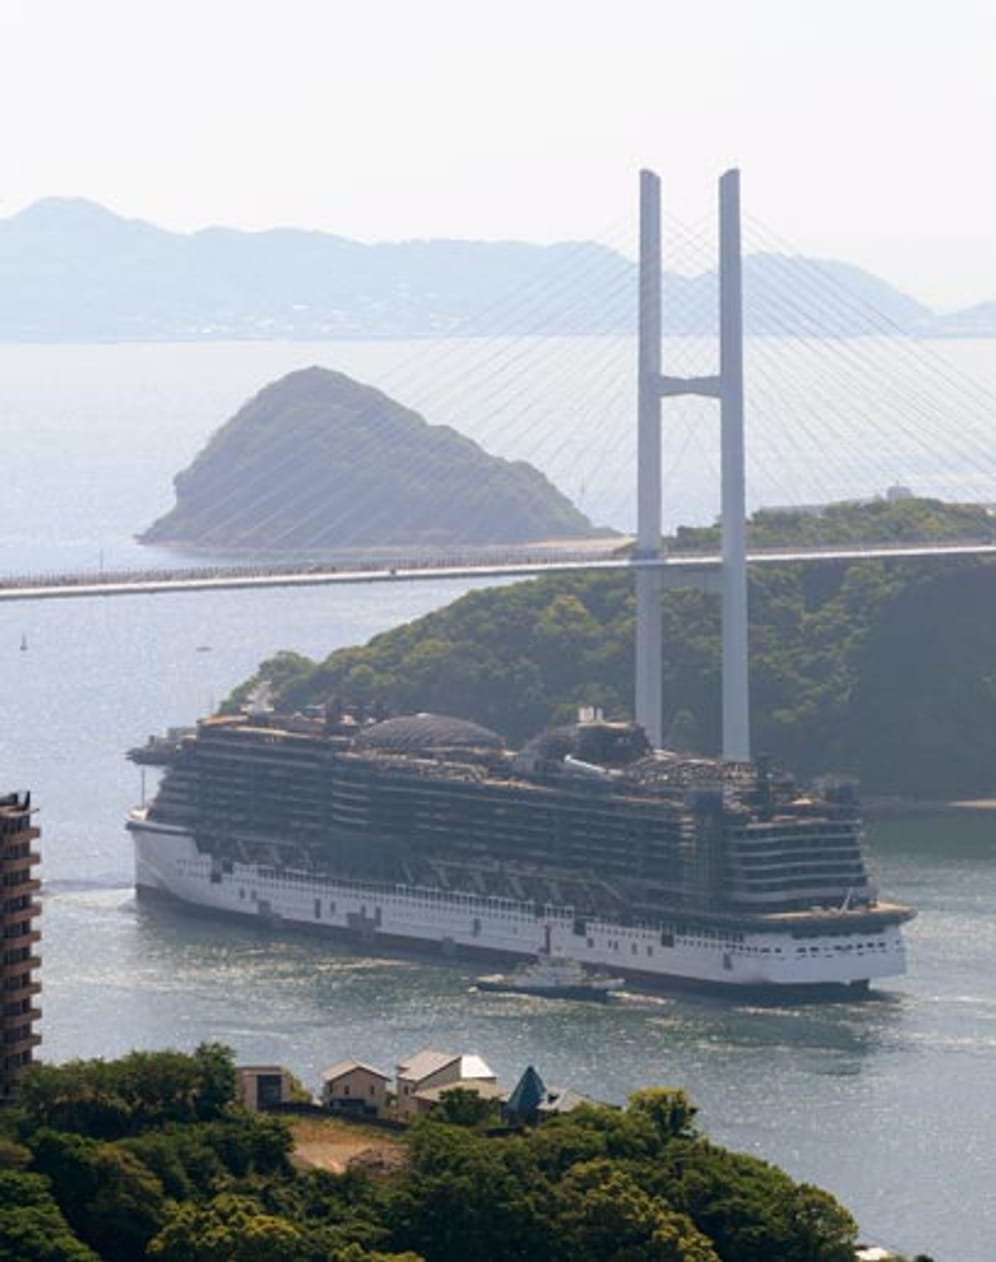 Nach dem erfolgreichen Zuwasserlassen ging die "Aidaprima" auf eine einstündige Testfahrt zu einem anderen Dock am Rande Nagasakis.